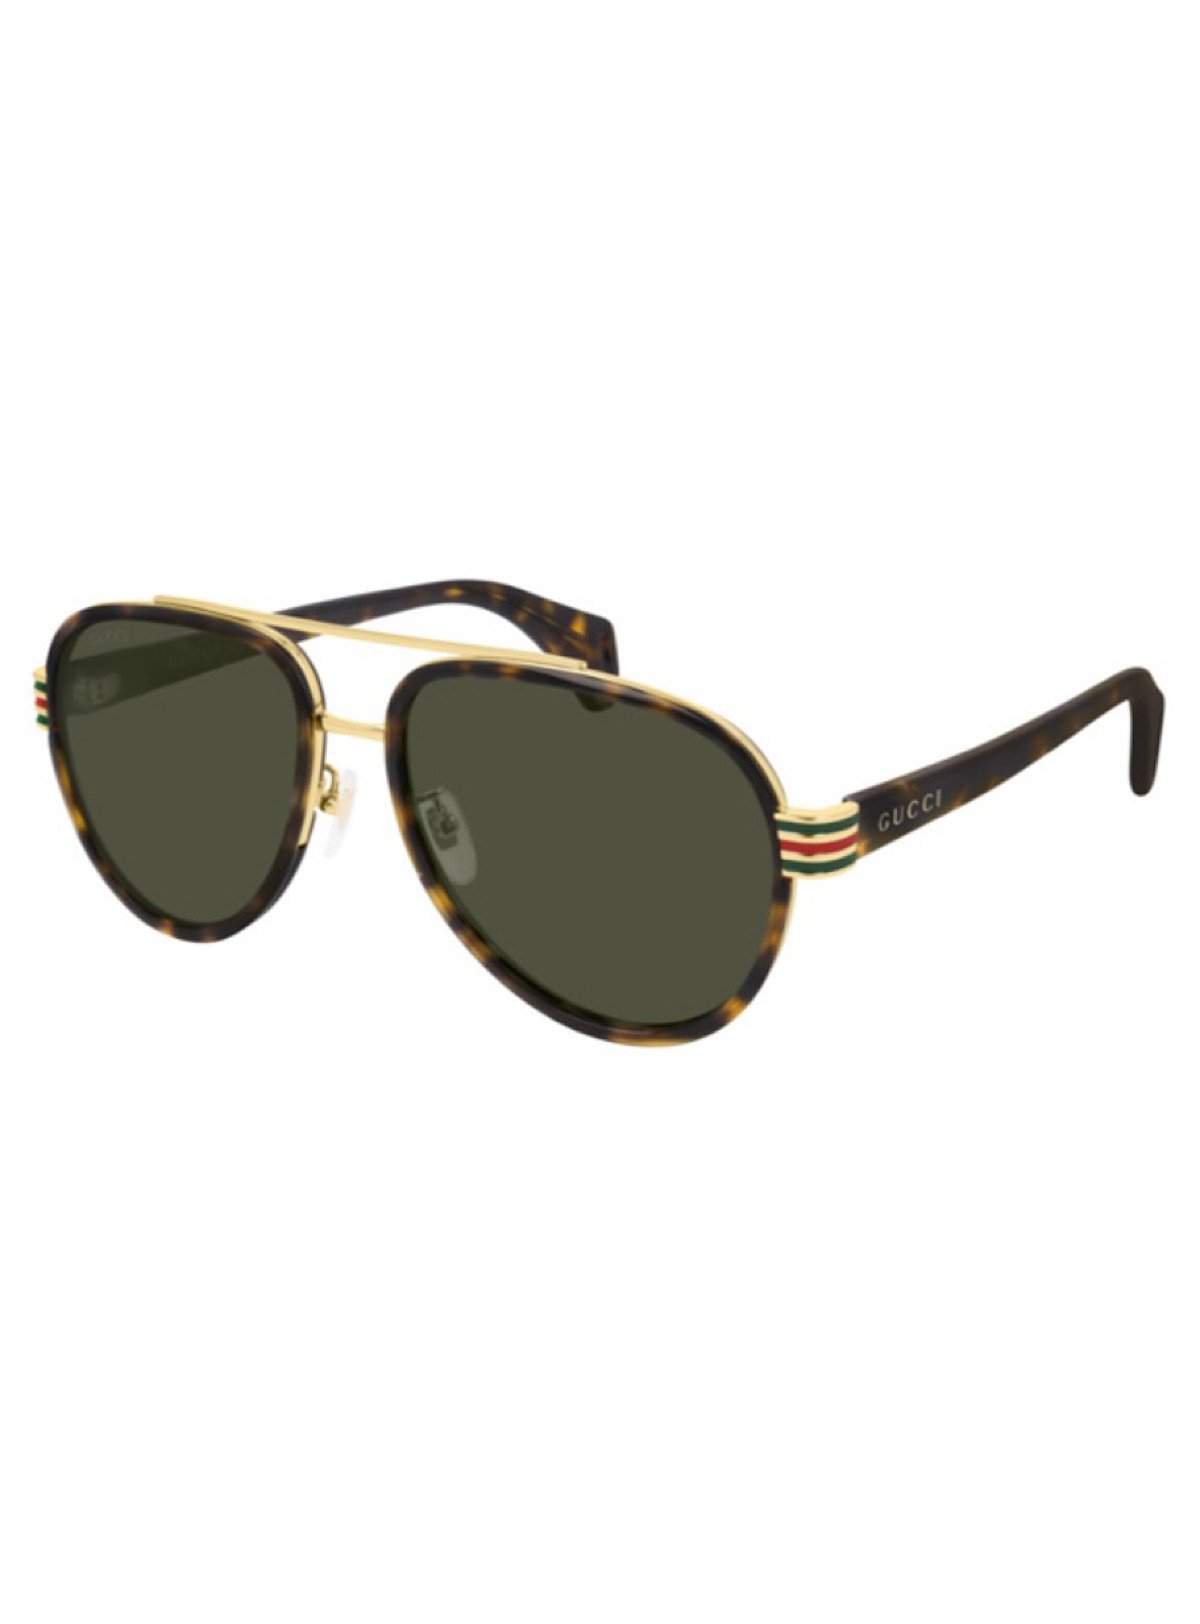 Gucci Sunglasses - Green - GG0447 003 